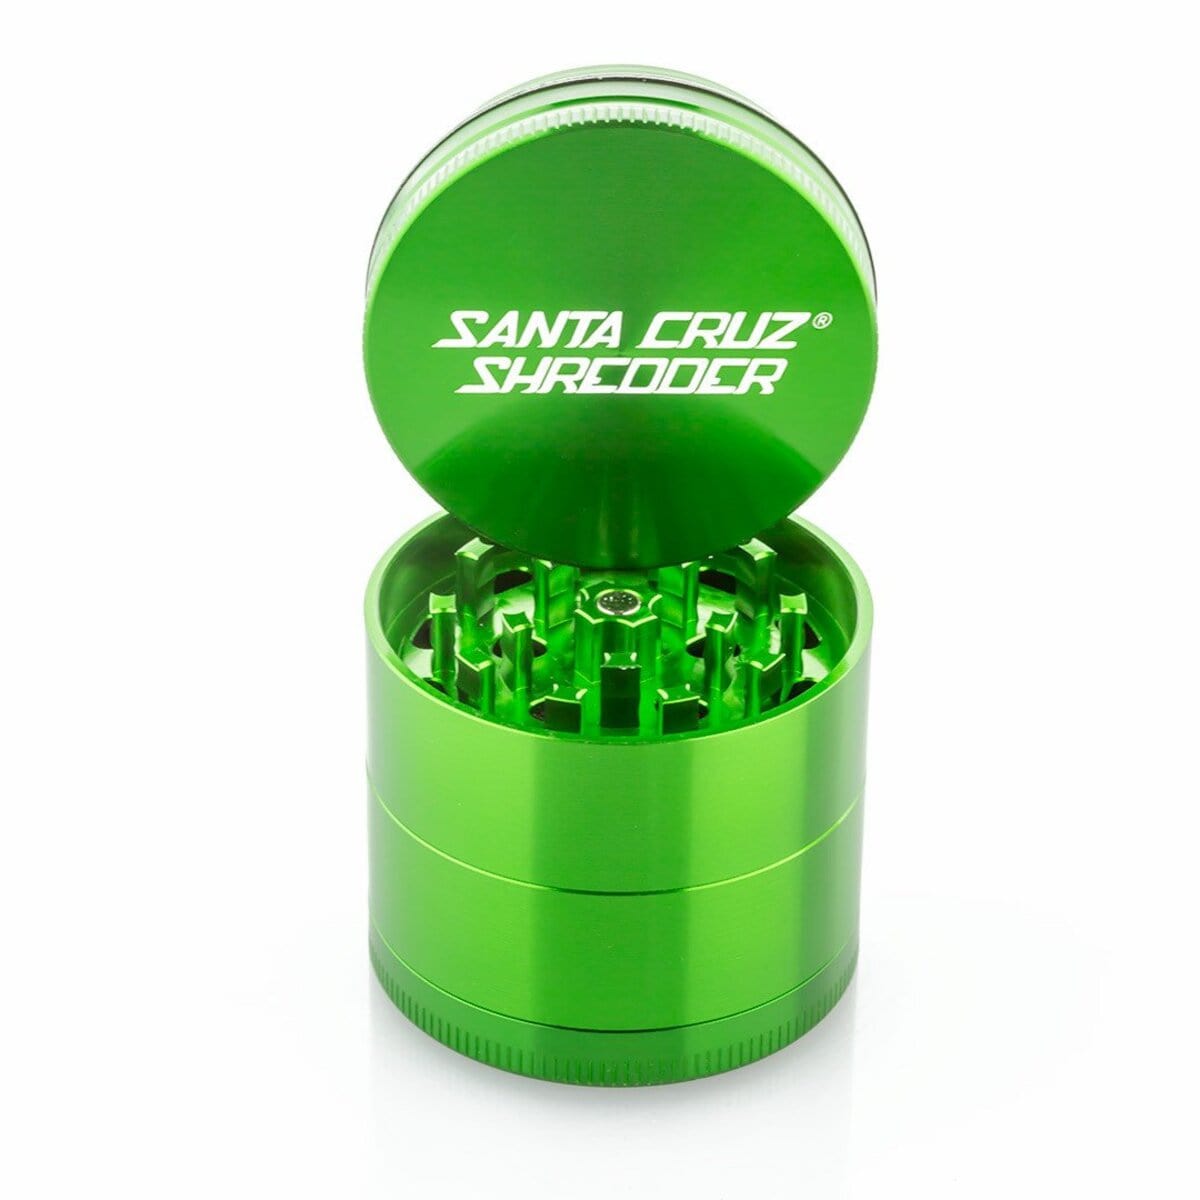 Santa Cruz Shredder Grinder Green Santa Cruz Shredder 4 Piece Medium Grinder